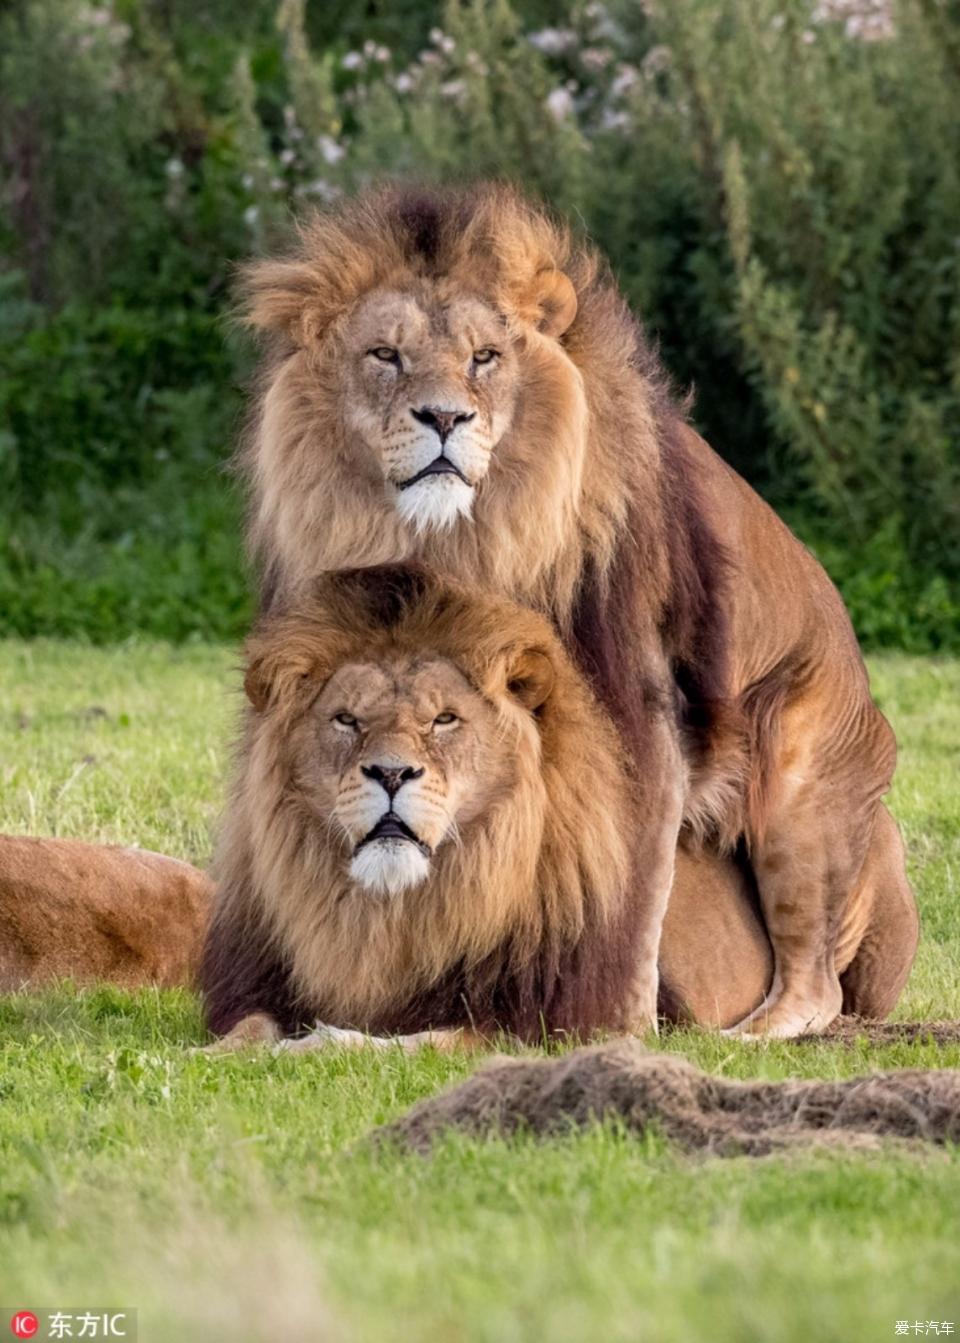 英国两头雄狮同性交配母狮一旁看热闹